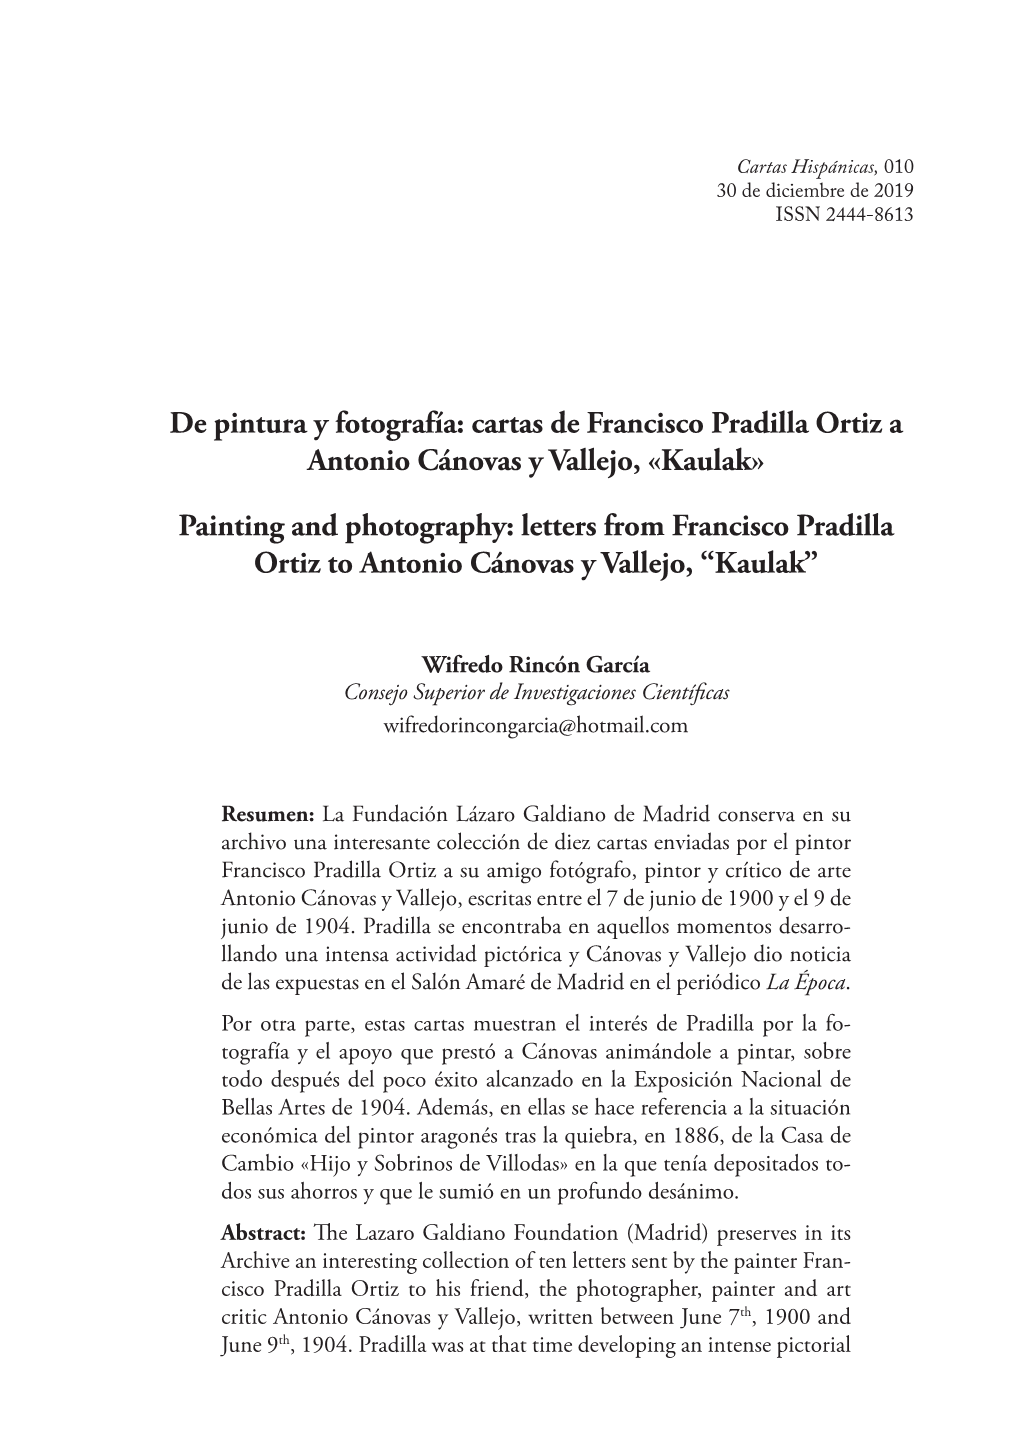 Cartas De Francisco Pradilla Ortiz a Antonio Cánovas Y Vallejo, «Kaulak»